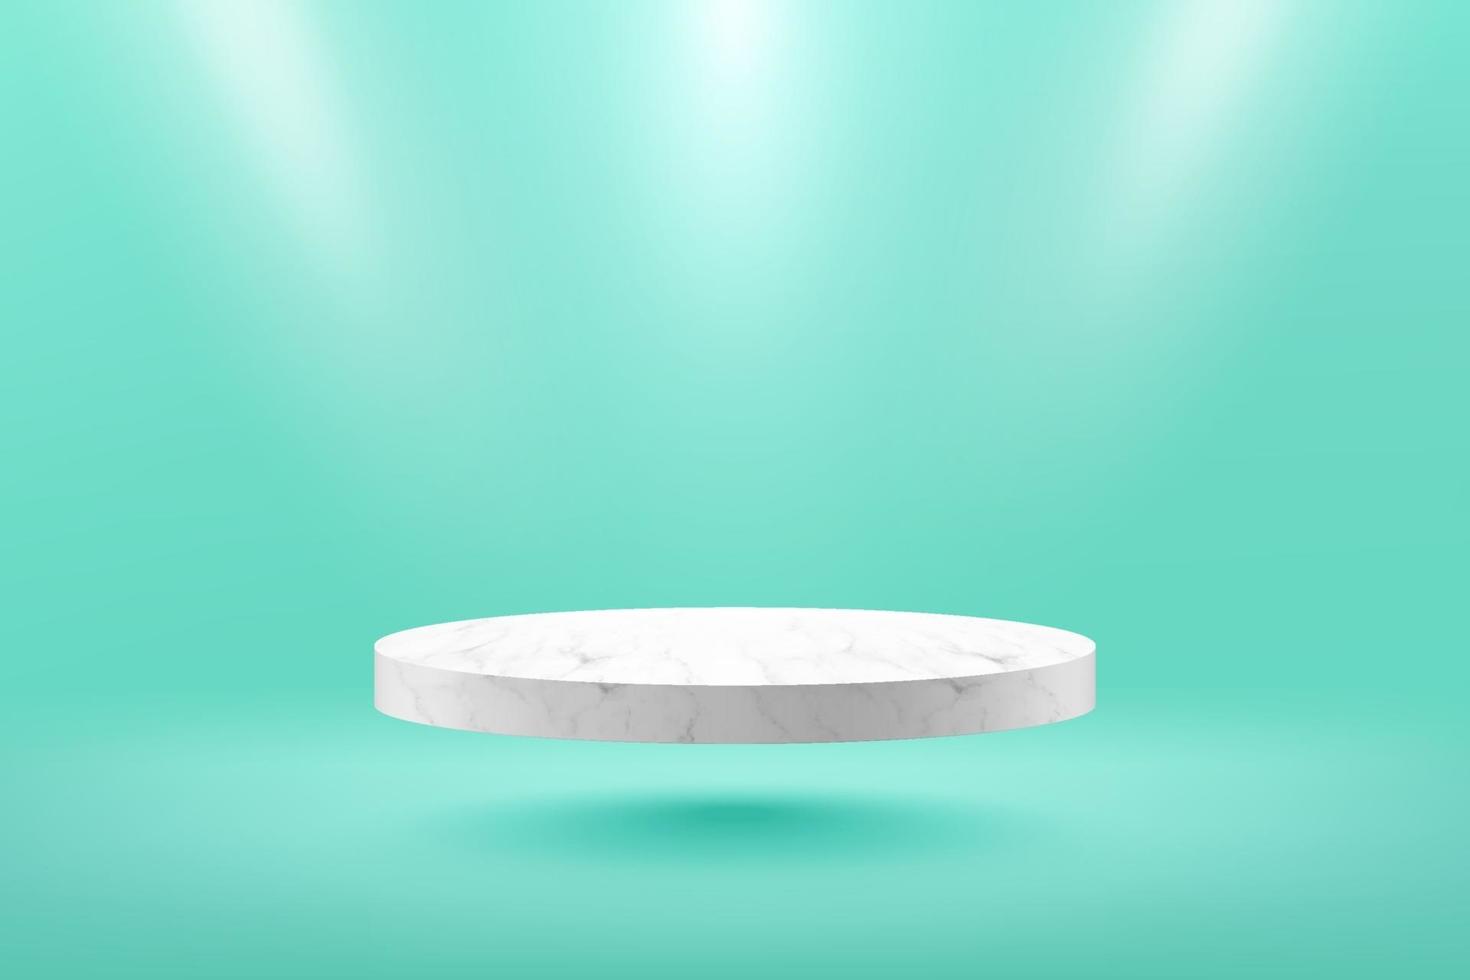 moderno podio cilindrico galleggiante in marmo bianco con stanza vuota verde chiaro e sfondo chiaro spot. rendering vettoriale astratto forma 3d per la visualizzazione di prodotti pubblicitari. stanza studio scena minima.